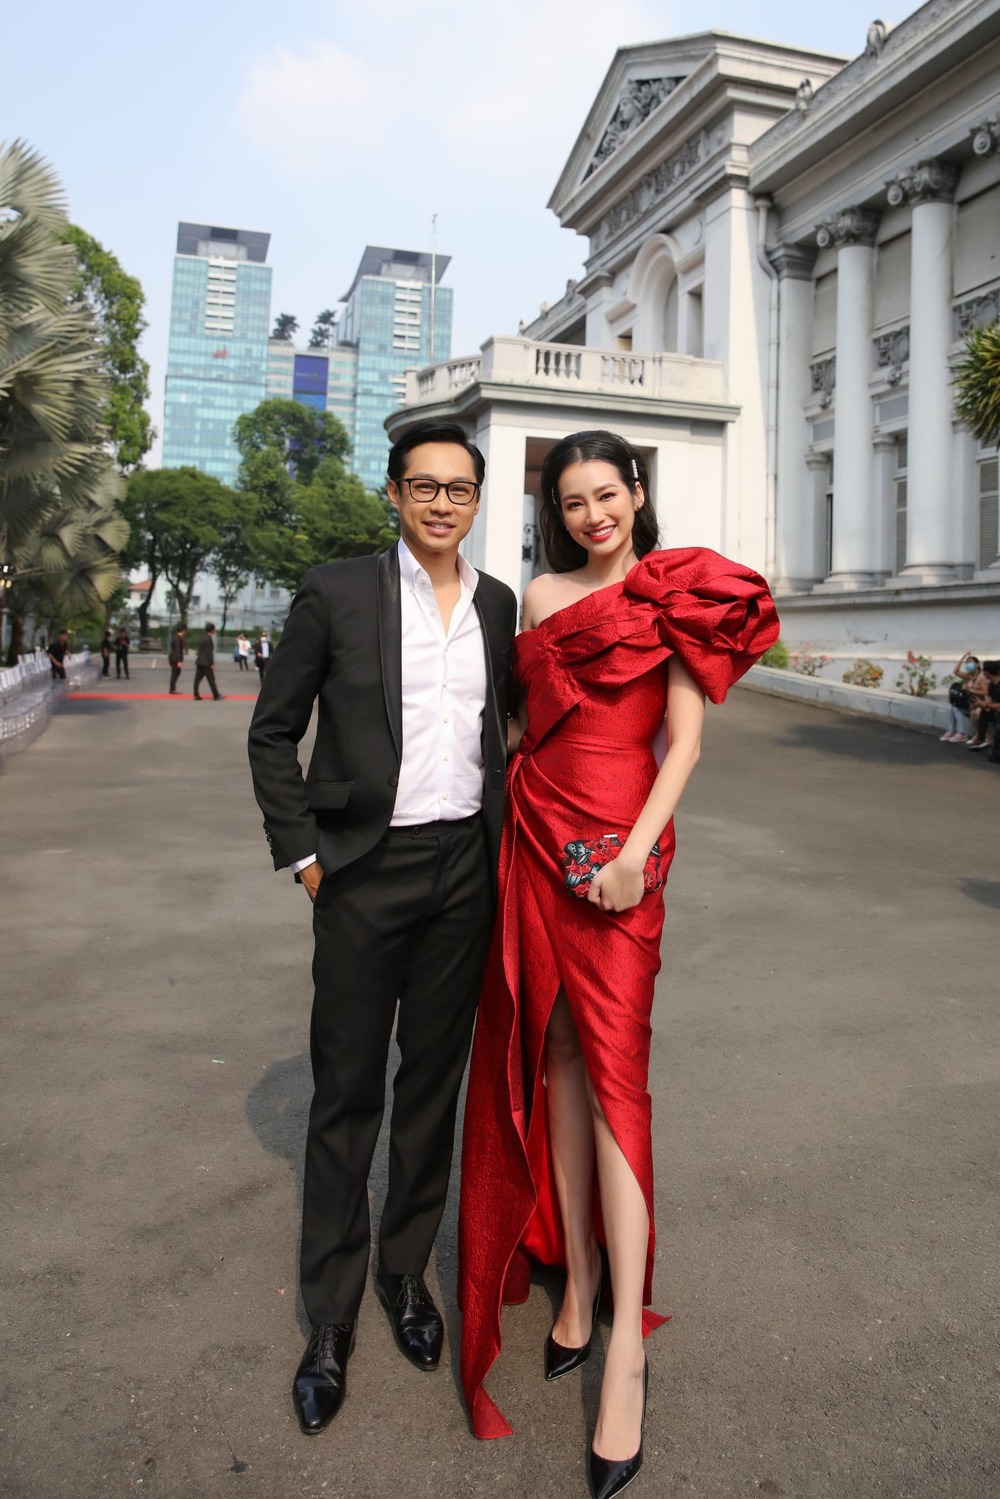  
Hoa hậu Trúc Diễm sánh đôi chồng Việt kiều